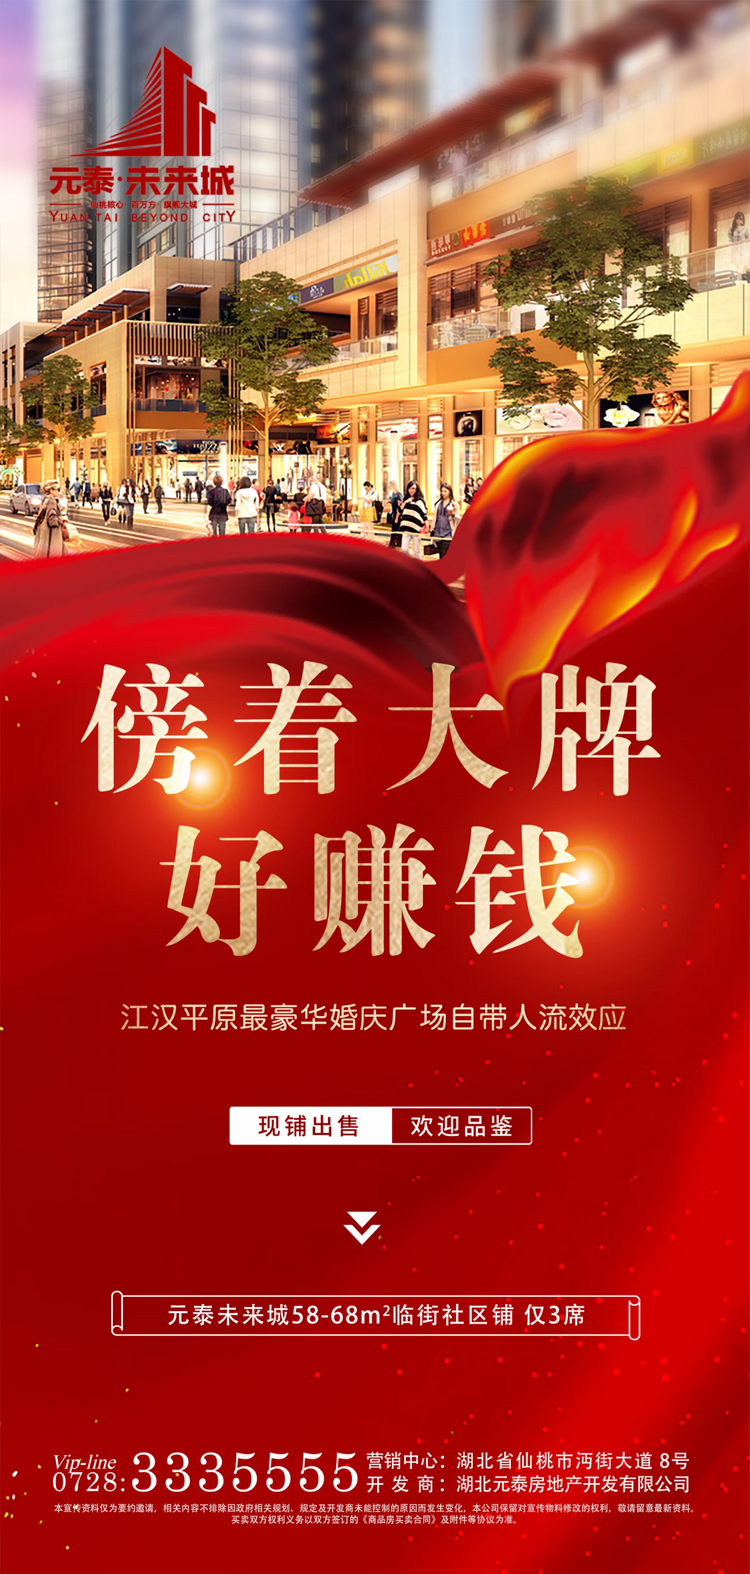 特大喜讯!元泰步行街将打造江汉平原最豪华婚庆广场